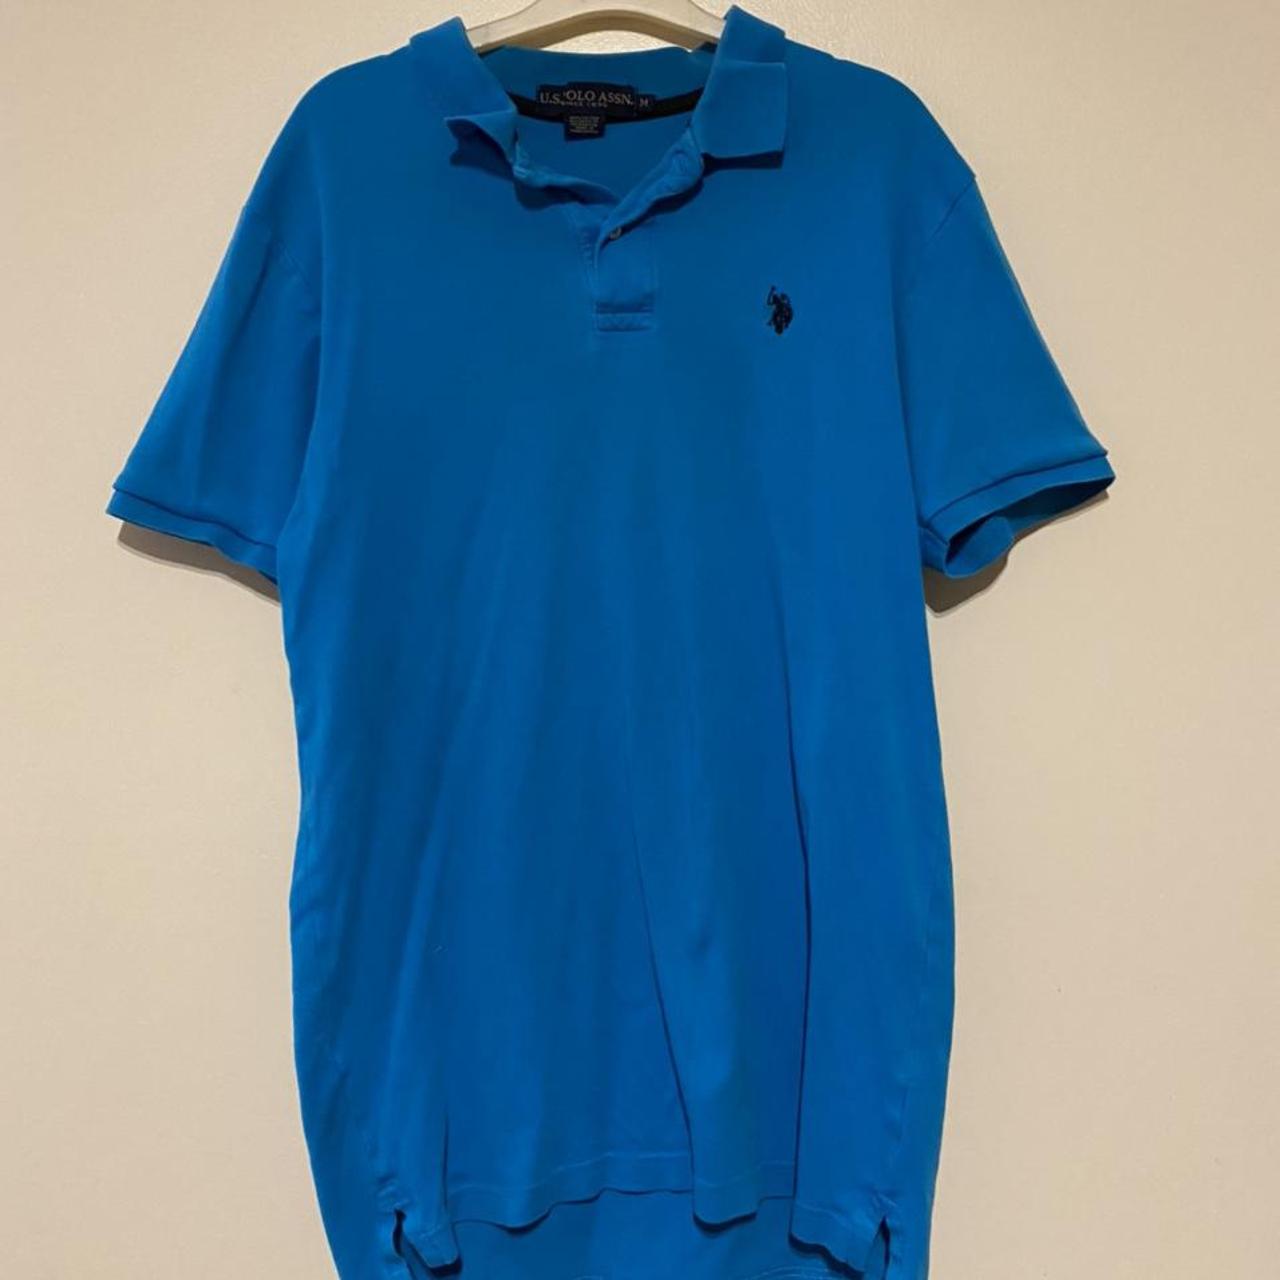 Product Image 1 - U.S. Polo Assn. Polo Shirt

Blue